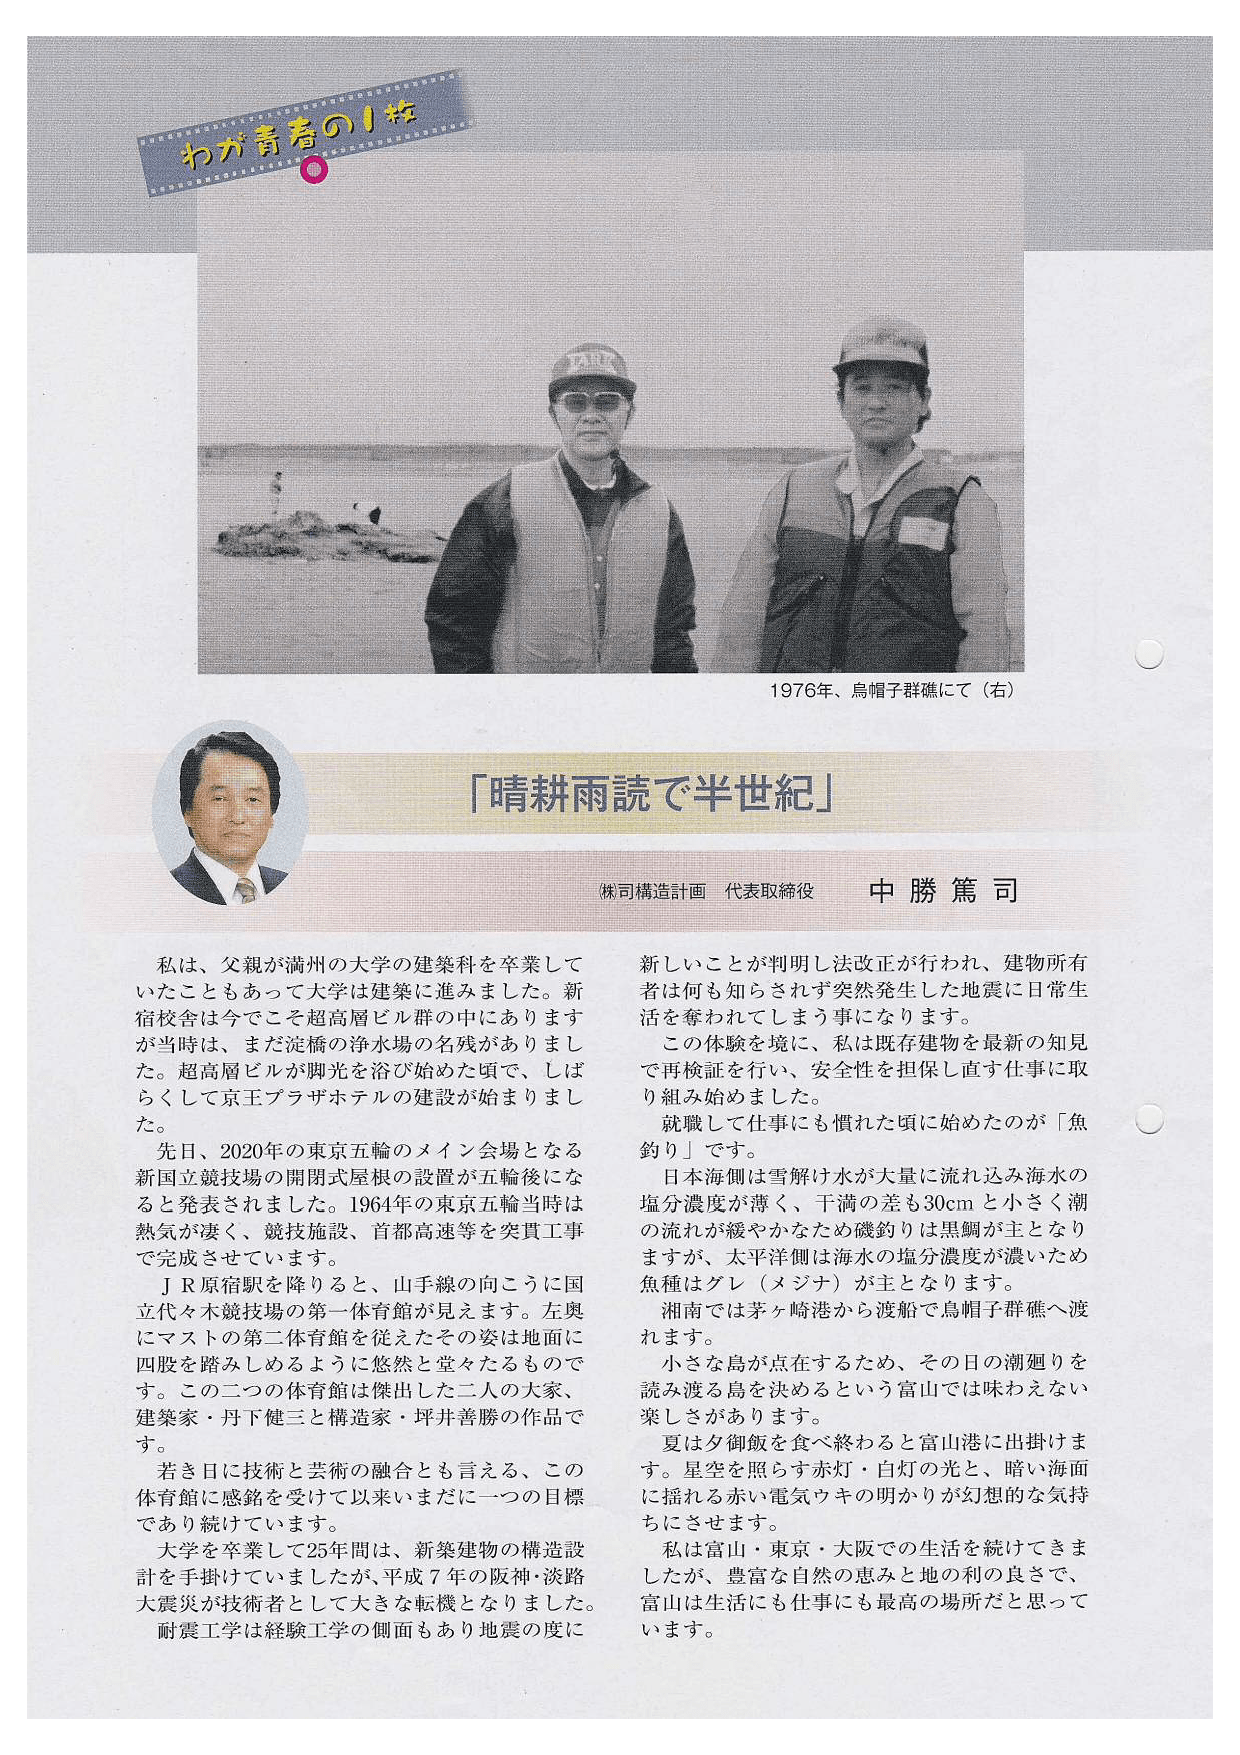 「富山経済同友会 会報」2015年7月号にインタビューが掲載されました